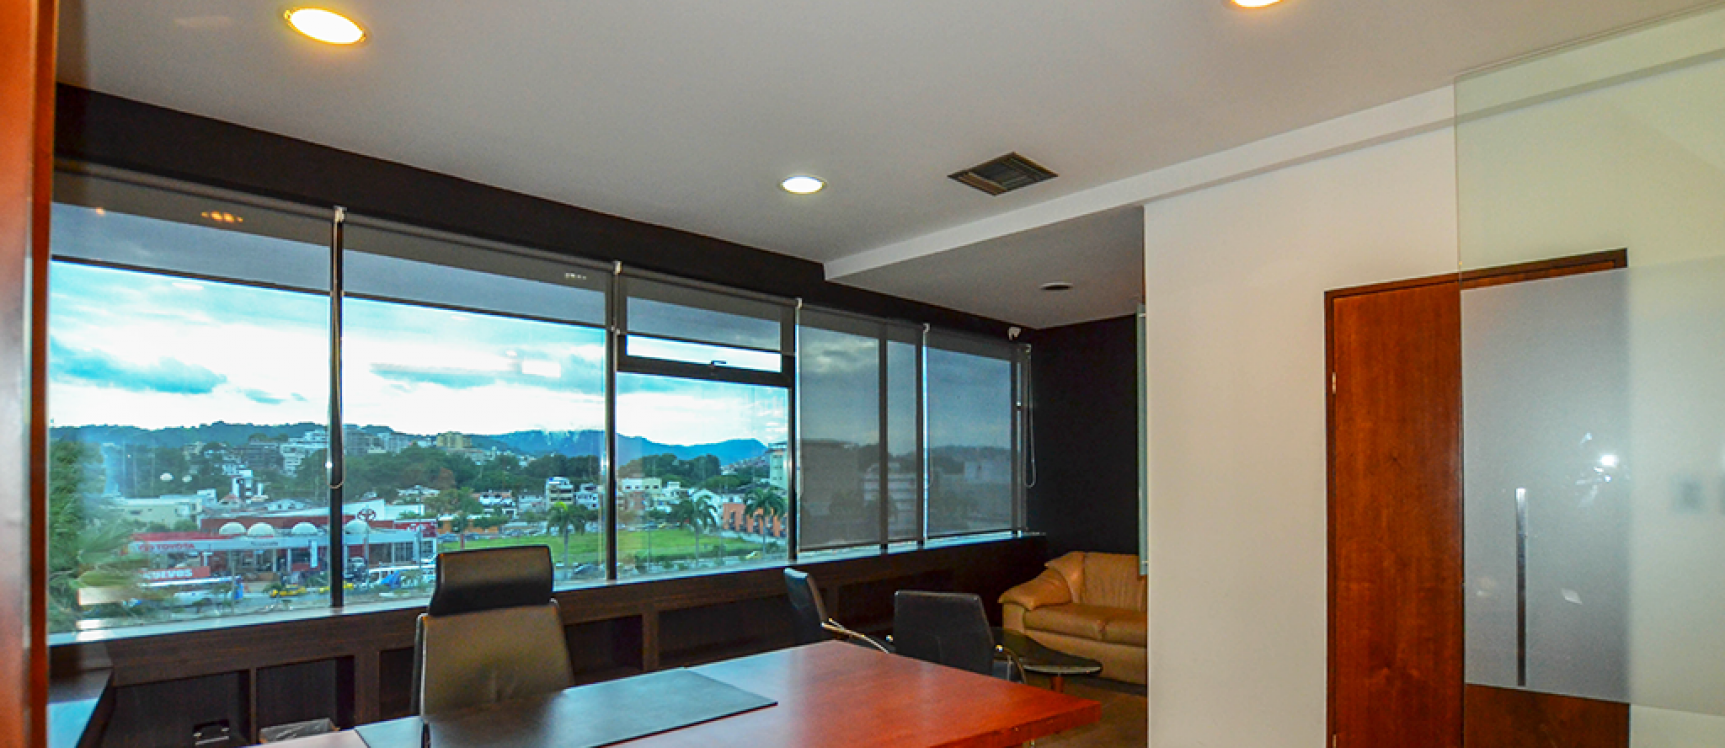 GeoBienes - Oficina en alquiler en Kennedy sector norte de Guayaquil - Plusvalia Guayaquil Casas de venta y alquiler Inmobiliaria Ecuador